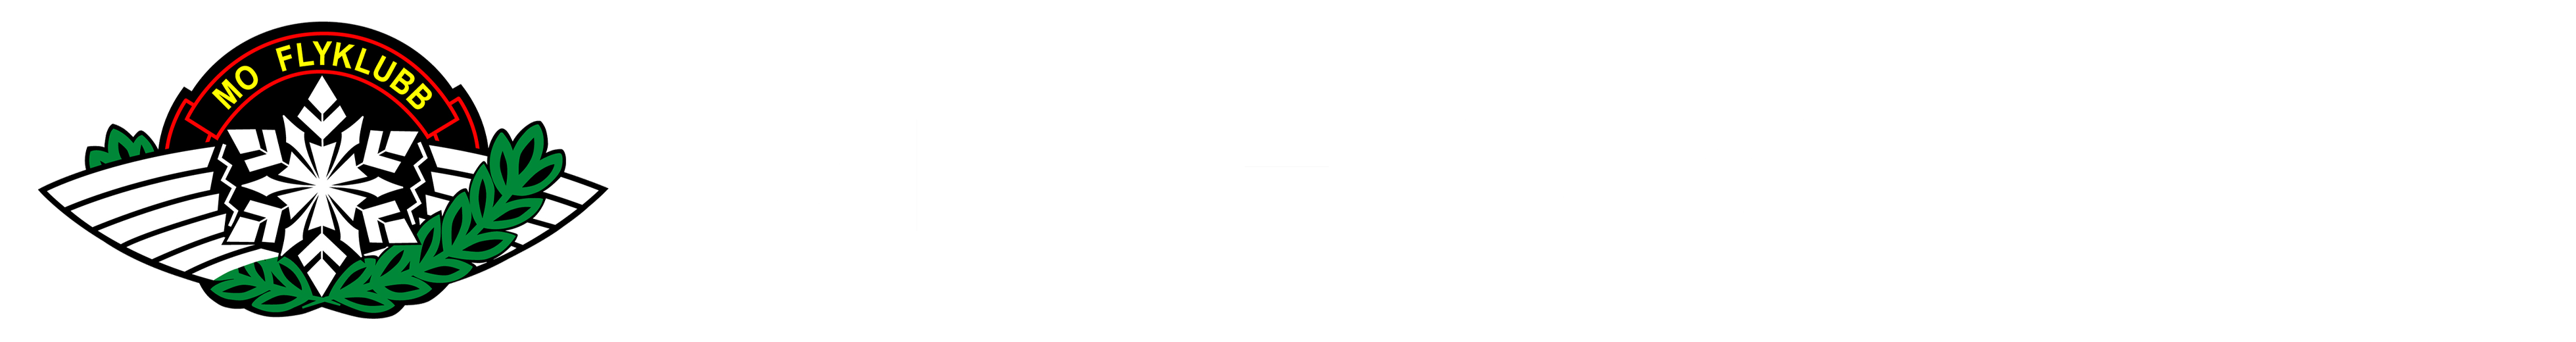 Mo Flyklubb Logo